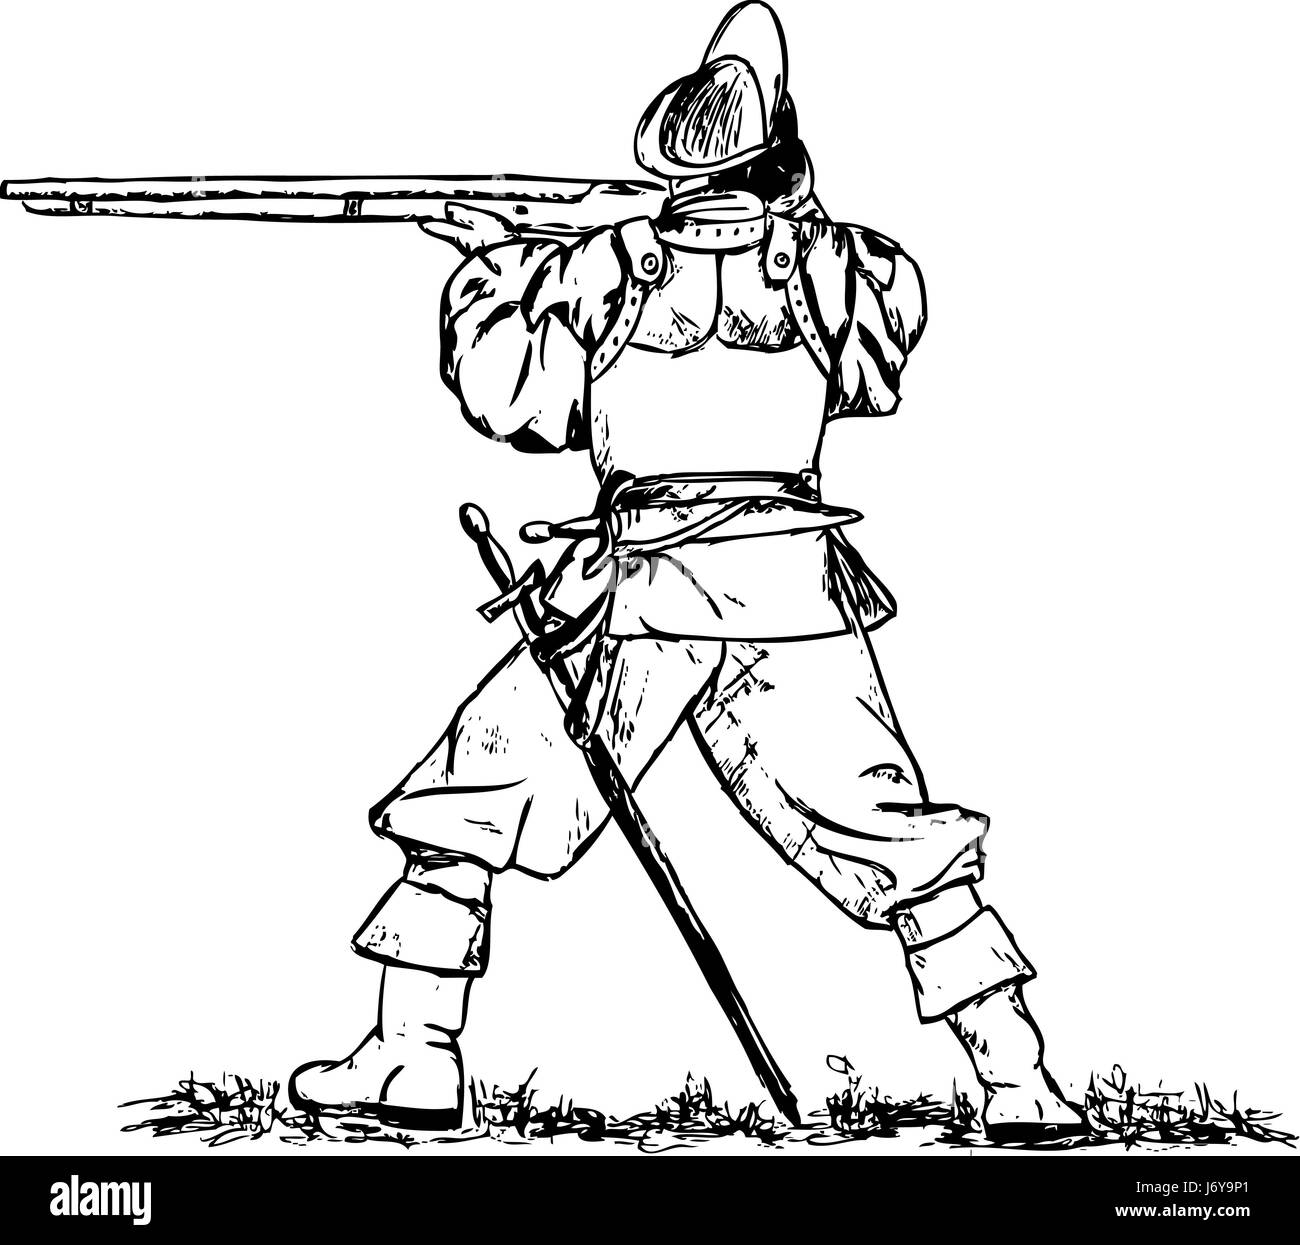 Espada del mosquetero stock de ilustración. Ilustración de épico - 59715865